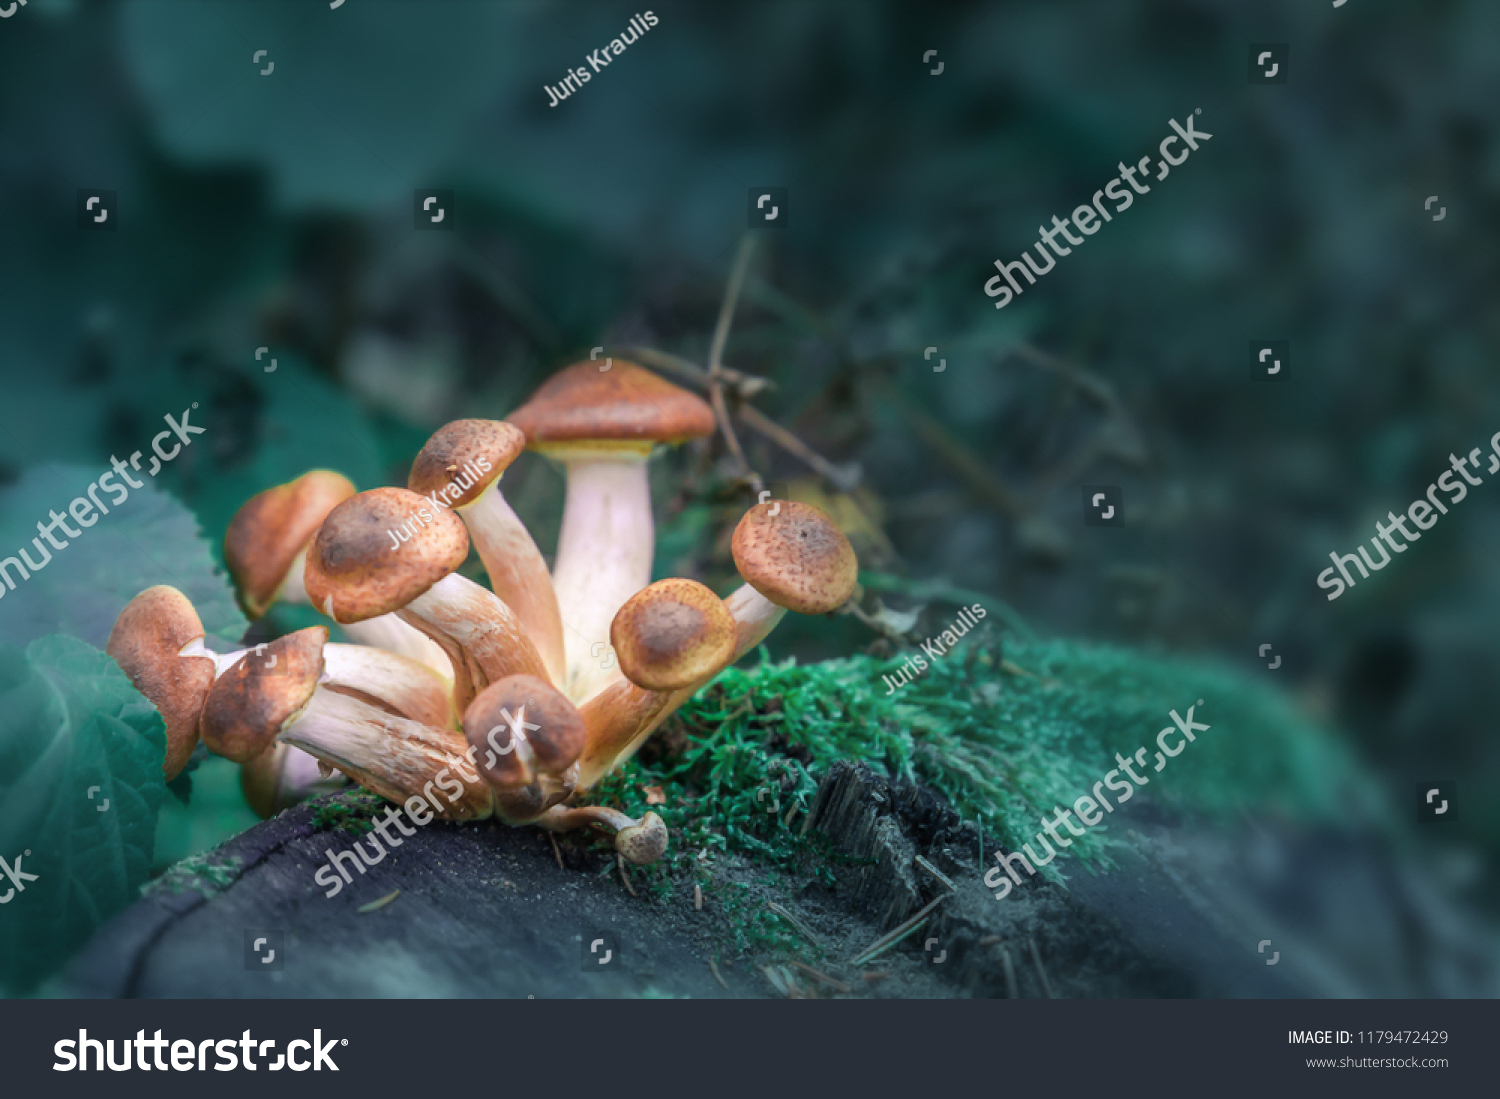 Magic Mushroom stock images. Psilocybin mushroom images. A group of magic mushrooms. #1179472429